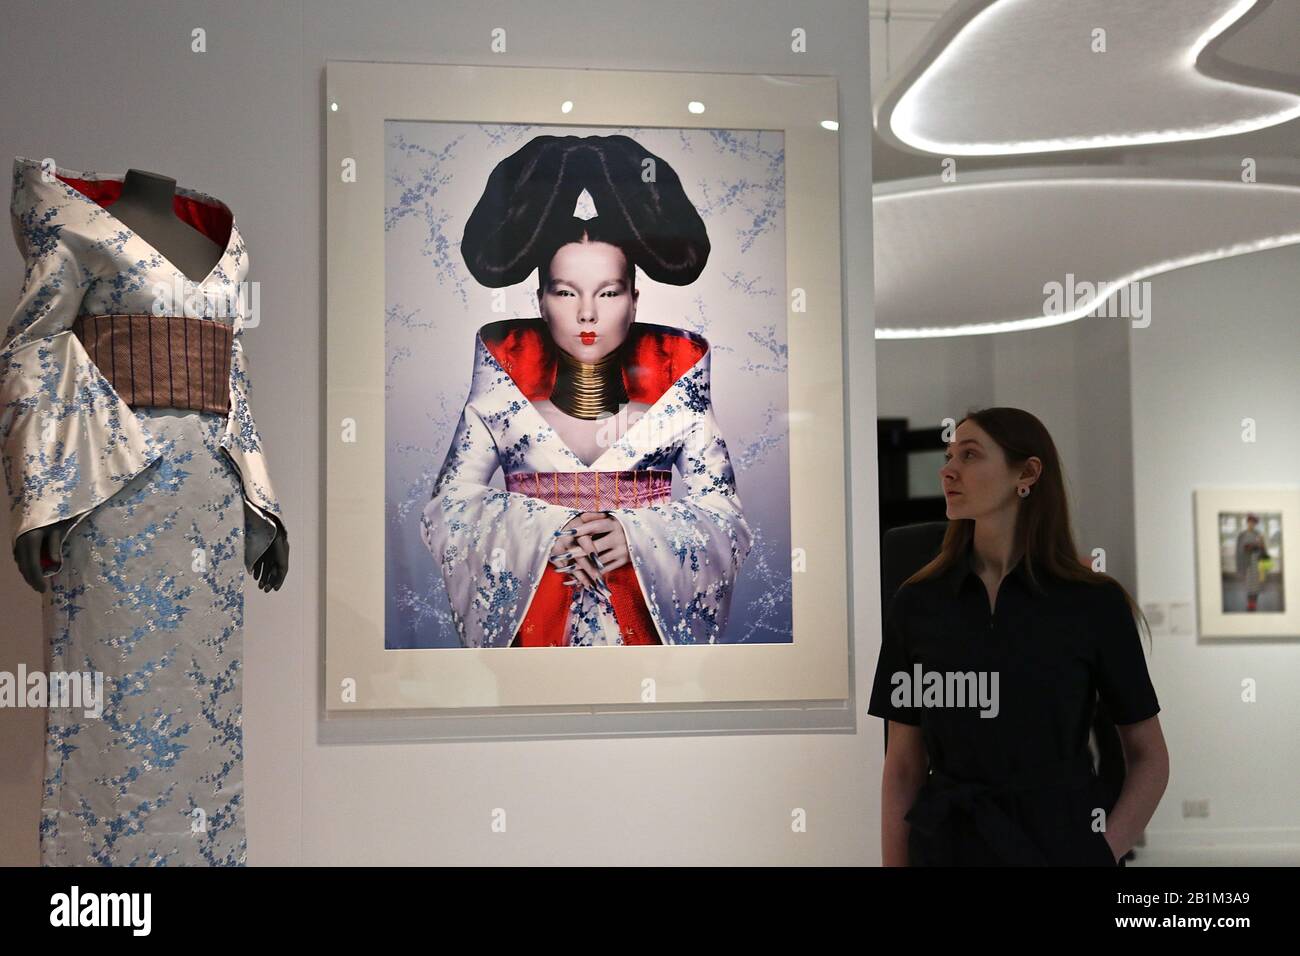 La primera gran exposición europea sobre kimono con prendas de vestir Madonna, Freddie Mercury y David Bowie, la exposición incluye por vez un raro kimono de los siglos 17 y